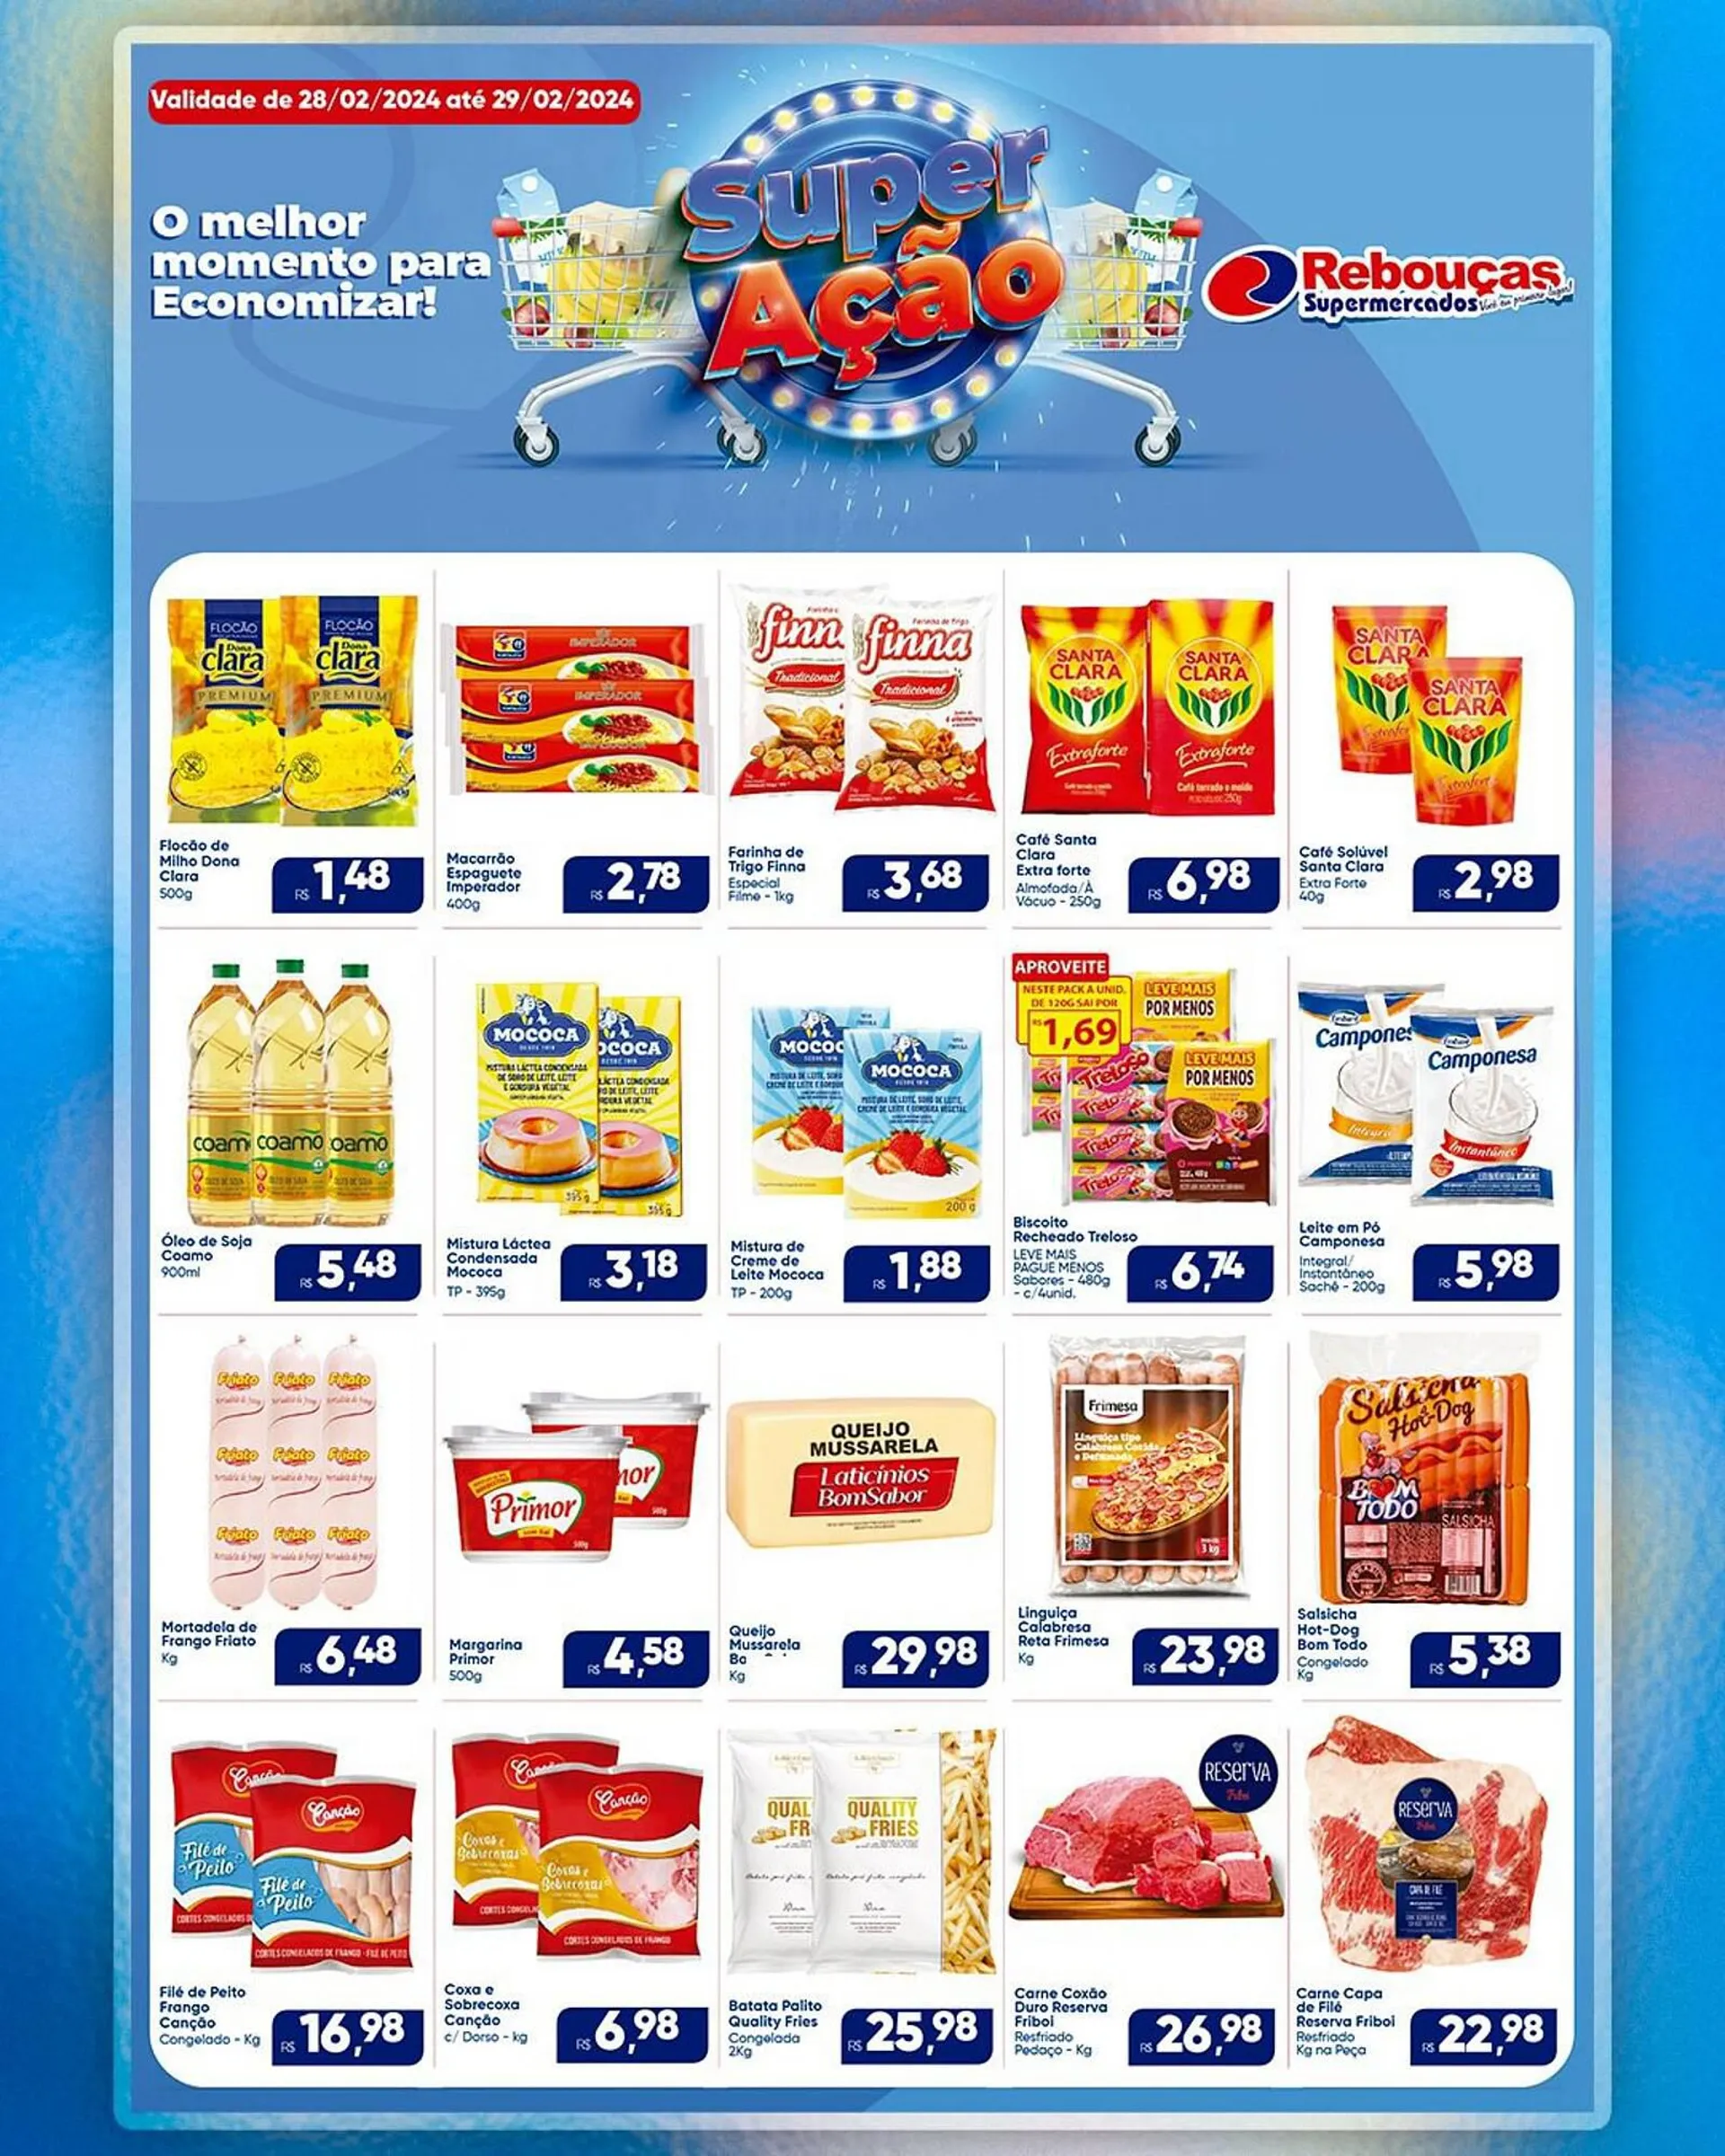 Encarte de Catálogo Rebouças Supermercados 28 de fevereiro até 29 de fevereiro 2024 - Pagina 